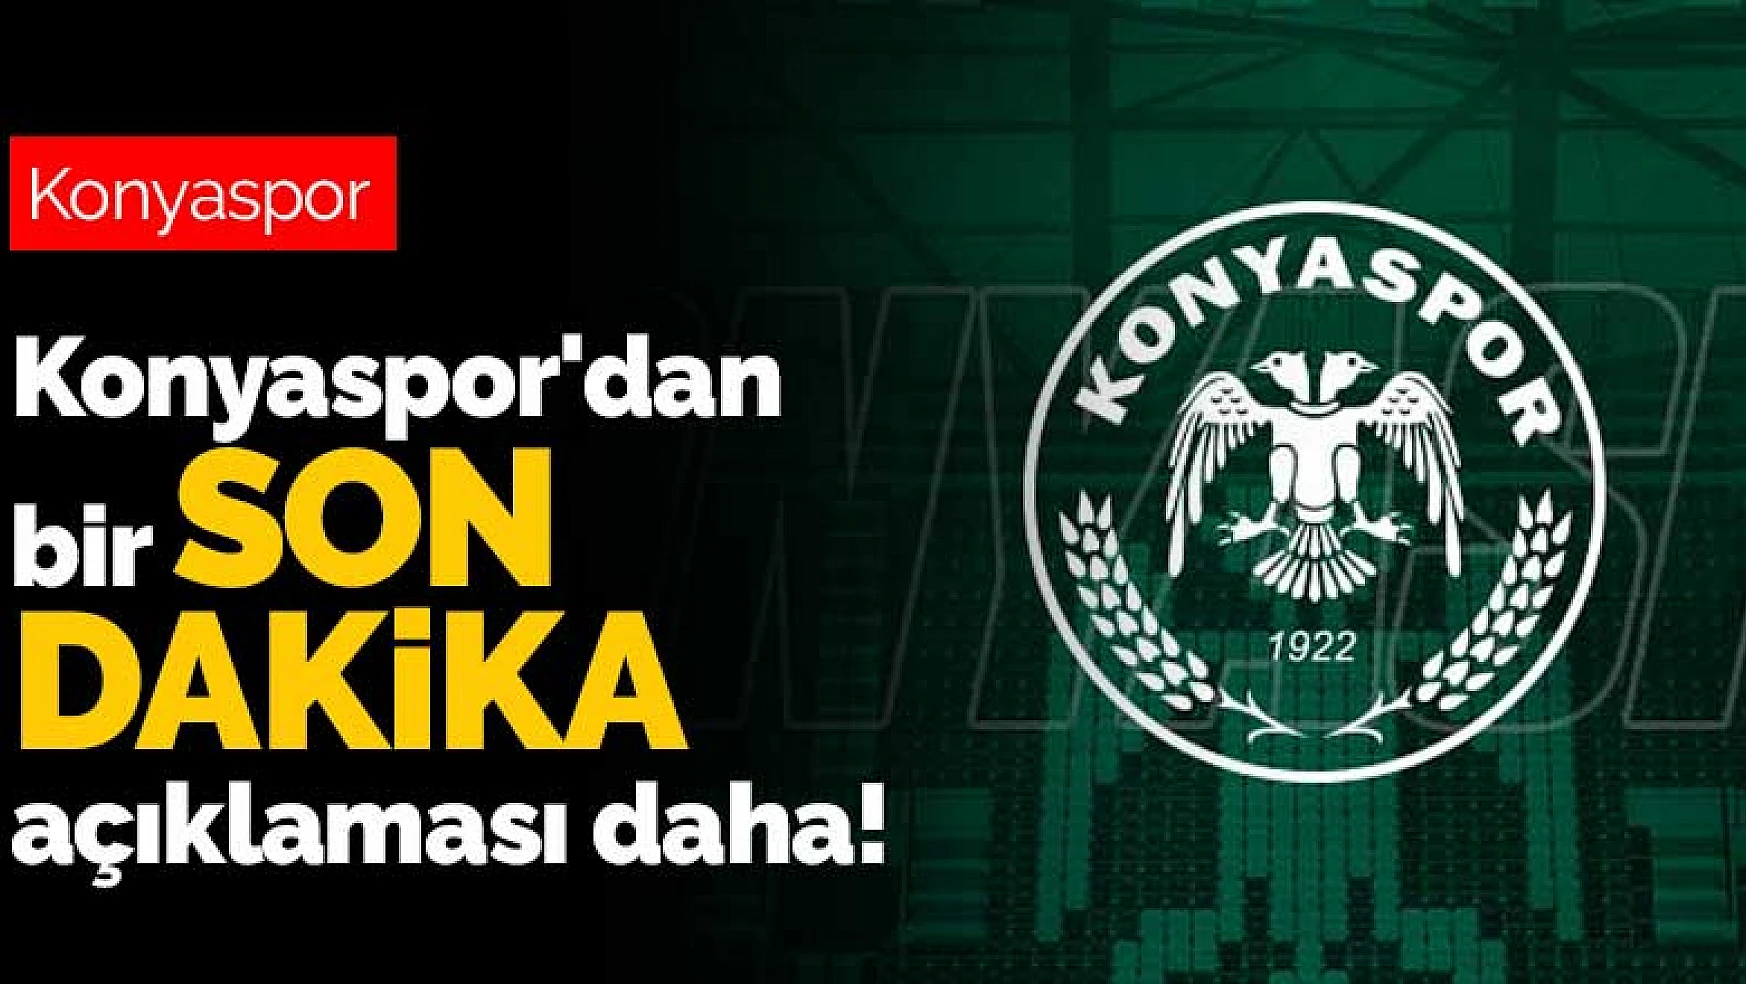 Konyaspor'dan bir son dakika açıklaması daha!